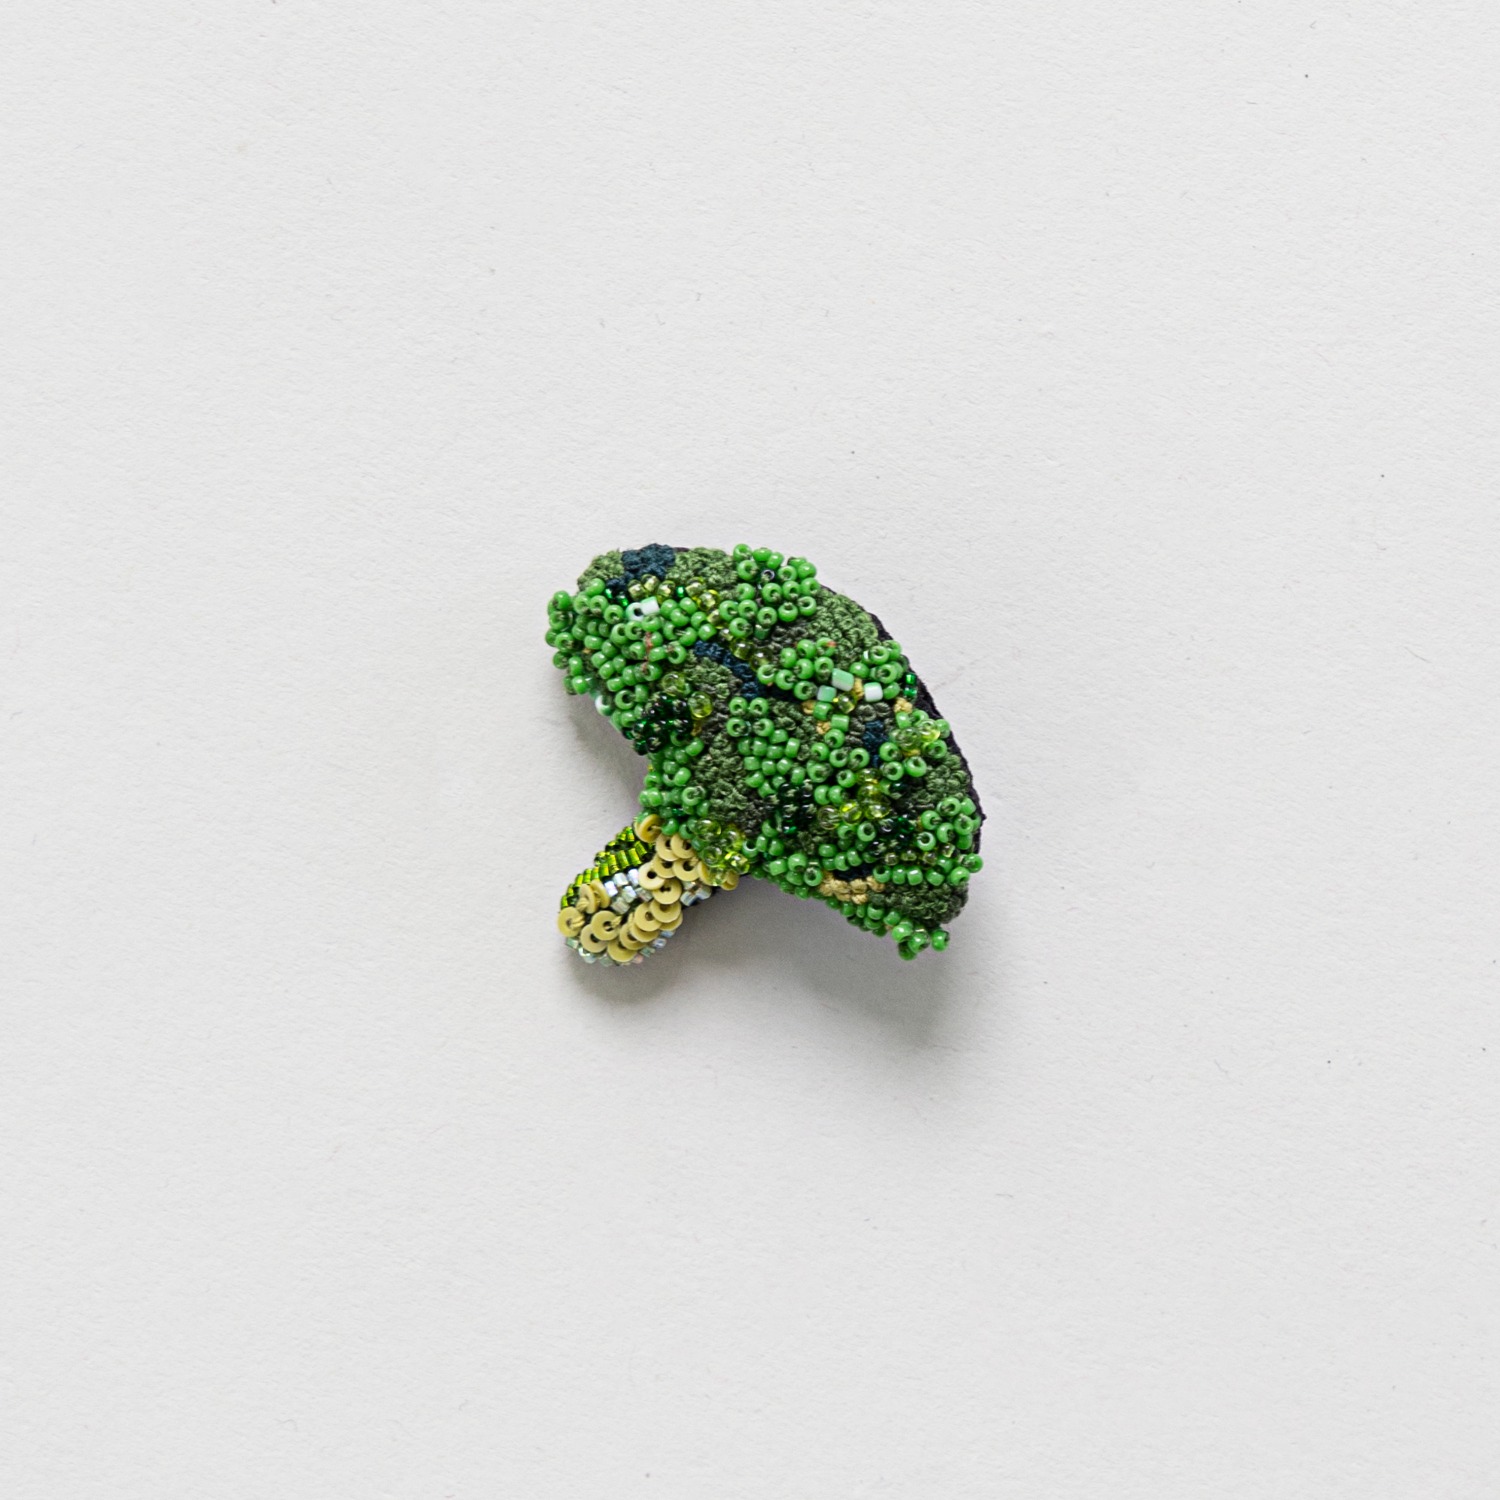 TROVELORE Broccoli Brooch Pin